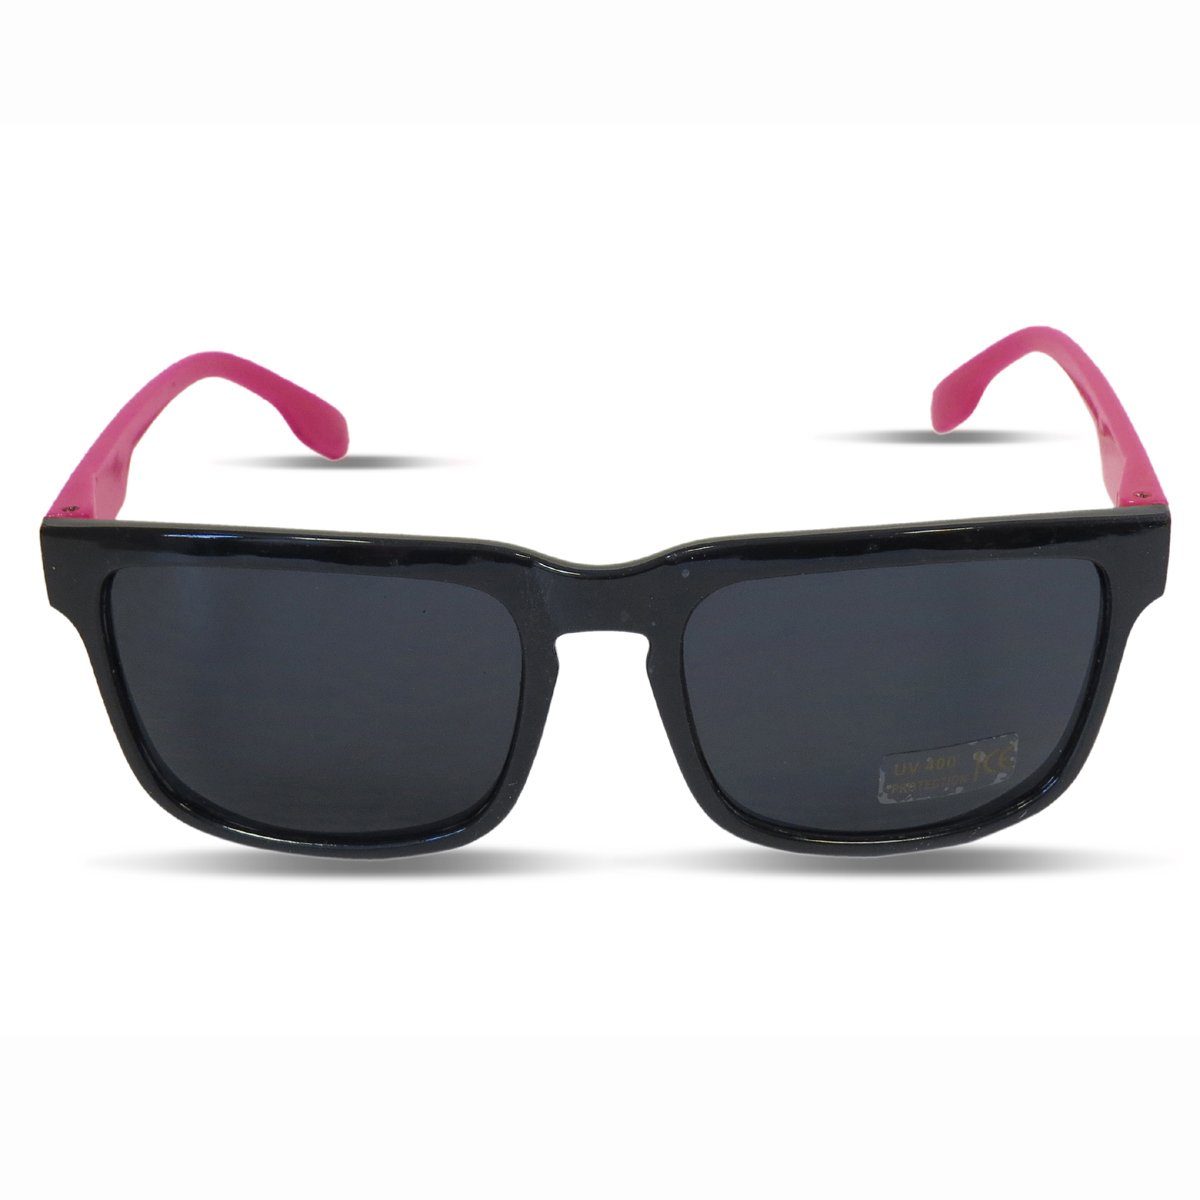 Sonia Originelli Sonnenbrille Sonnenbrille verspiegelt Party Klassik Wayfarer onesize pink